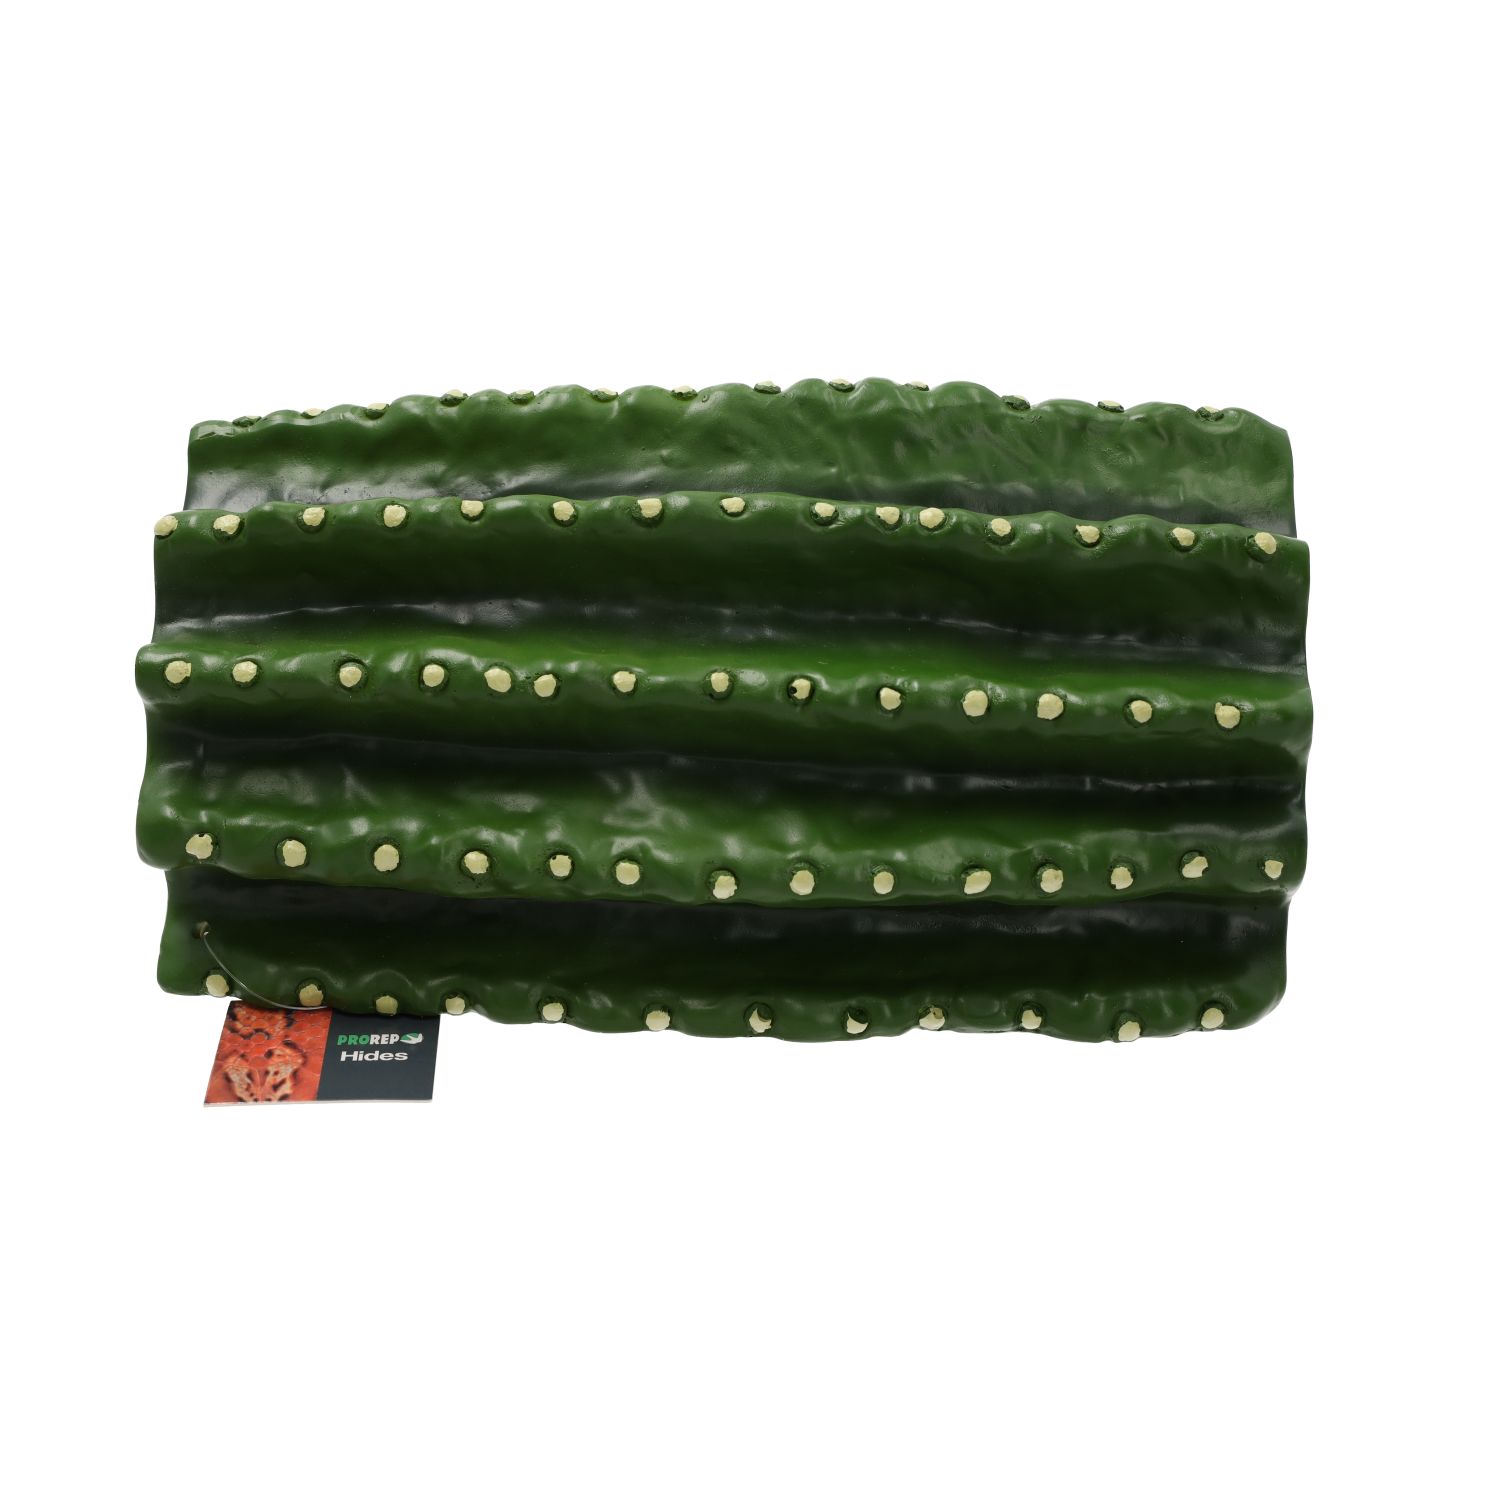 PR Cactus Hide 24.3x16x12cm DPH160